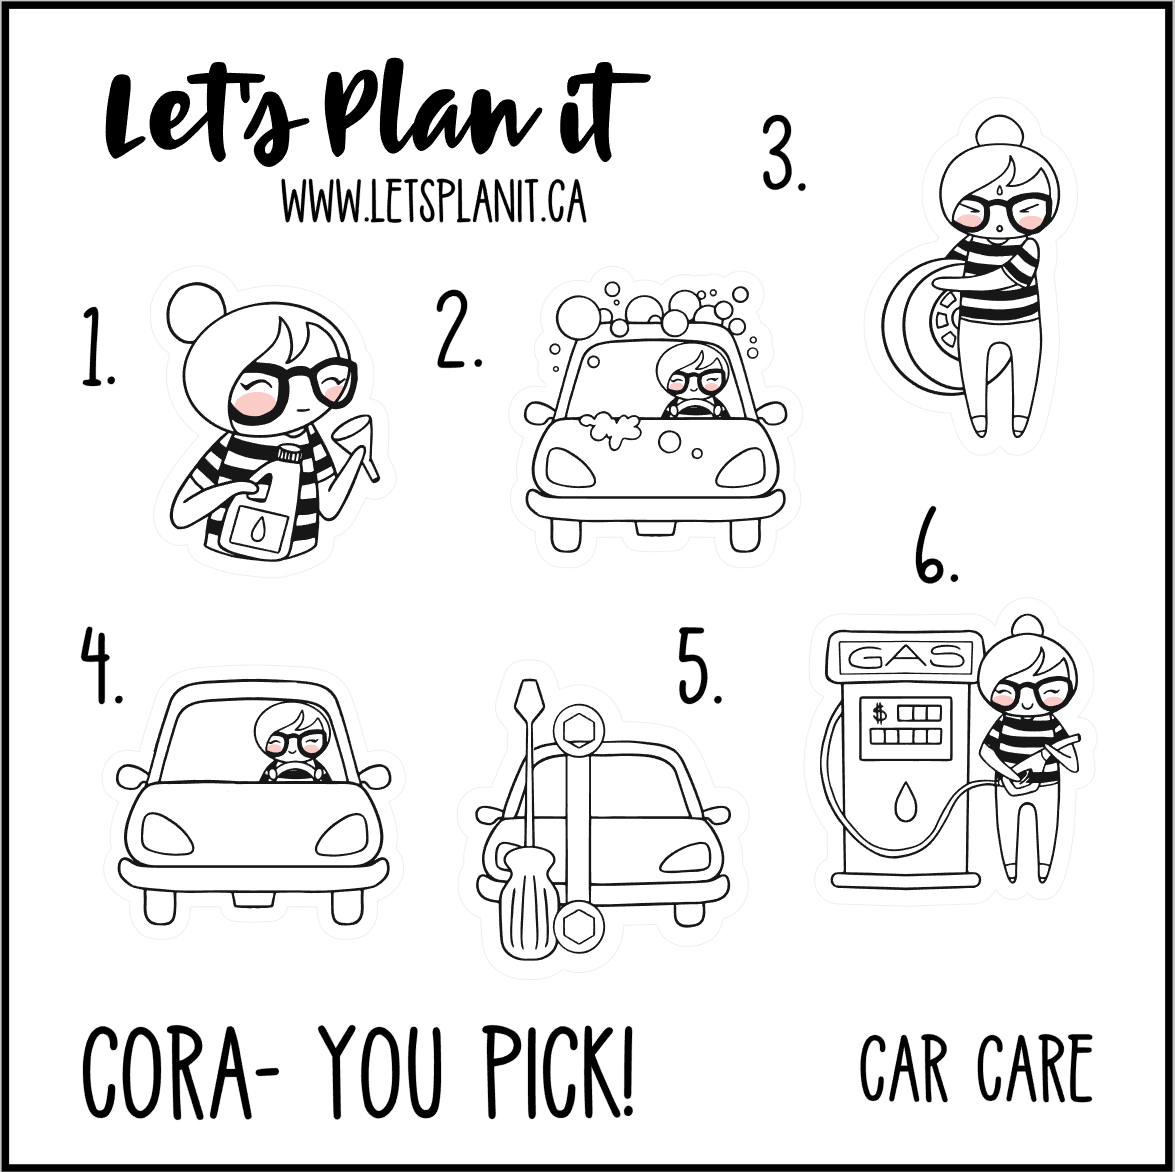 Cora-u-pick- Car Care